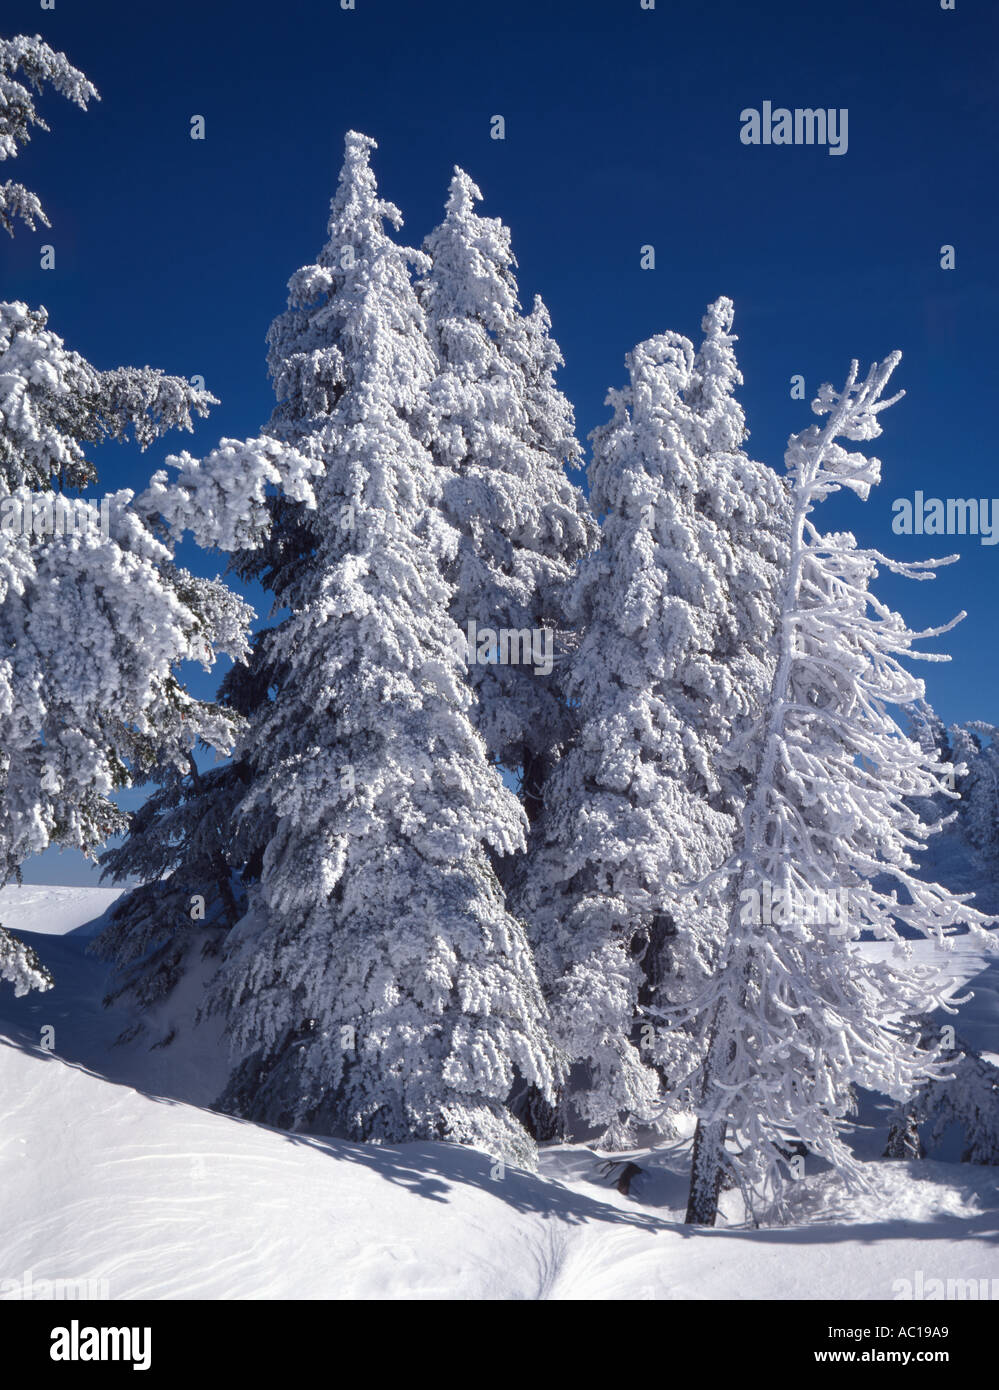 Vue verticale de givre blanc pur arbres givrés sur une froide journée d'hiver Banque D'Images